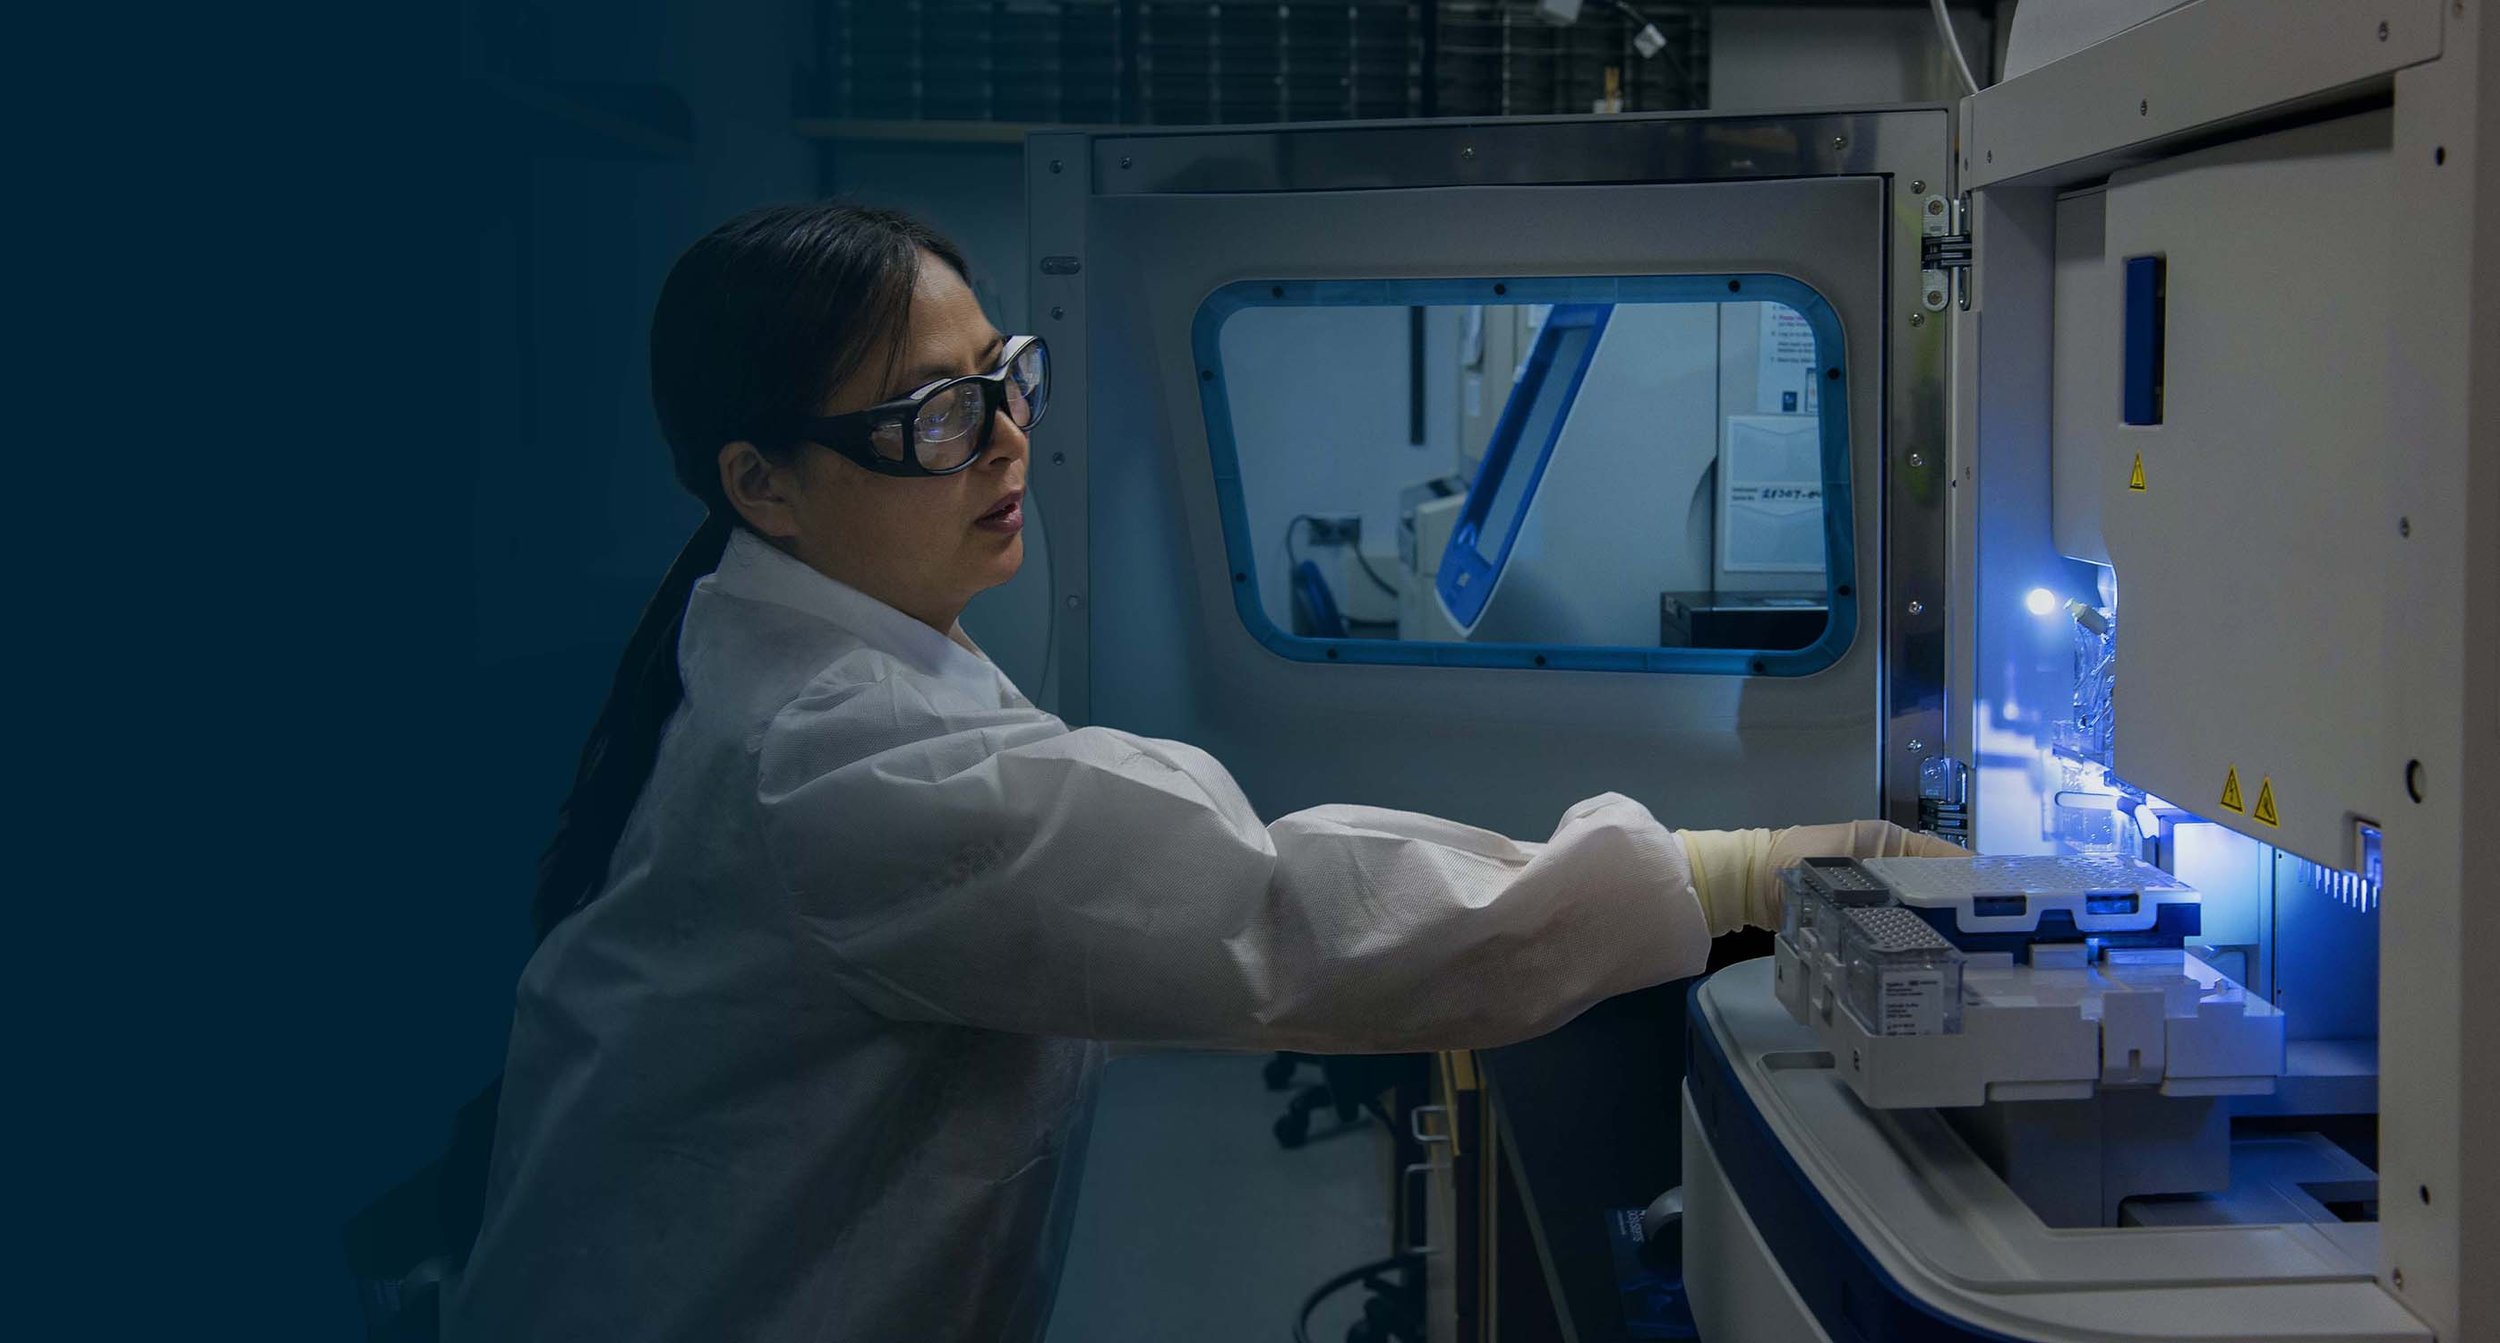 Laboratory employee operates a machine